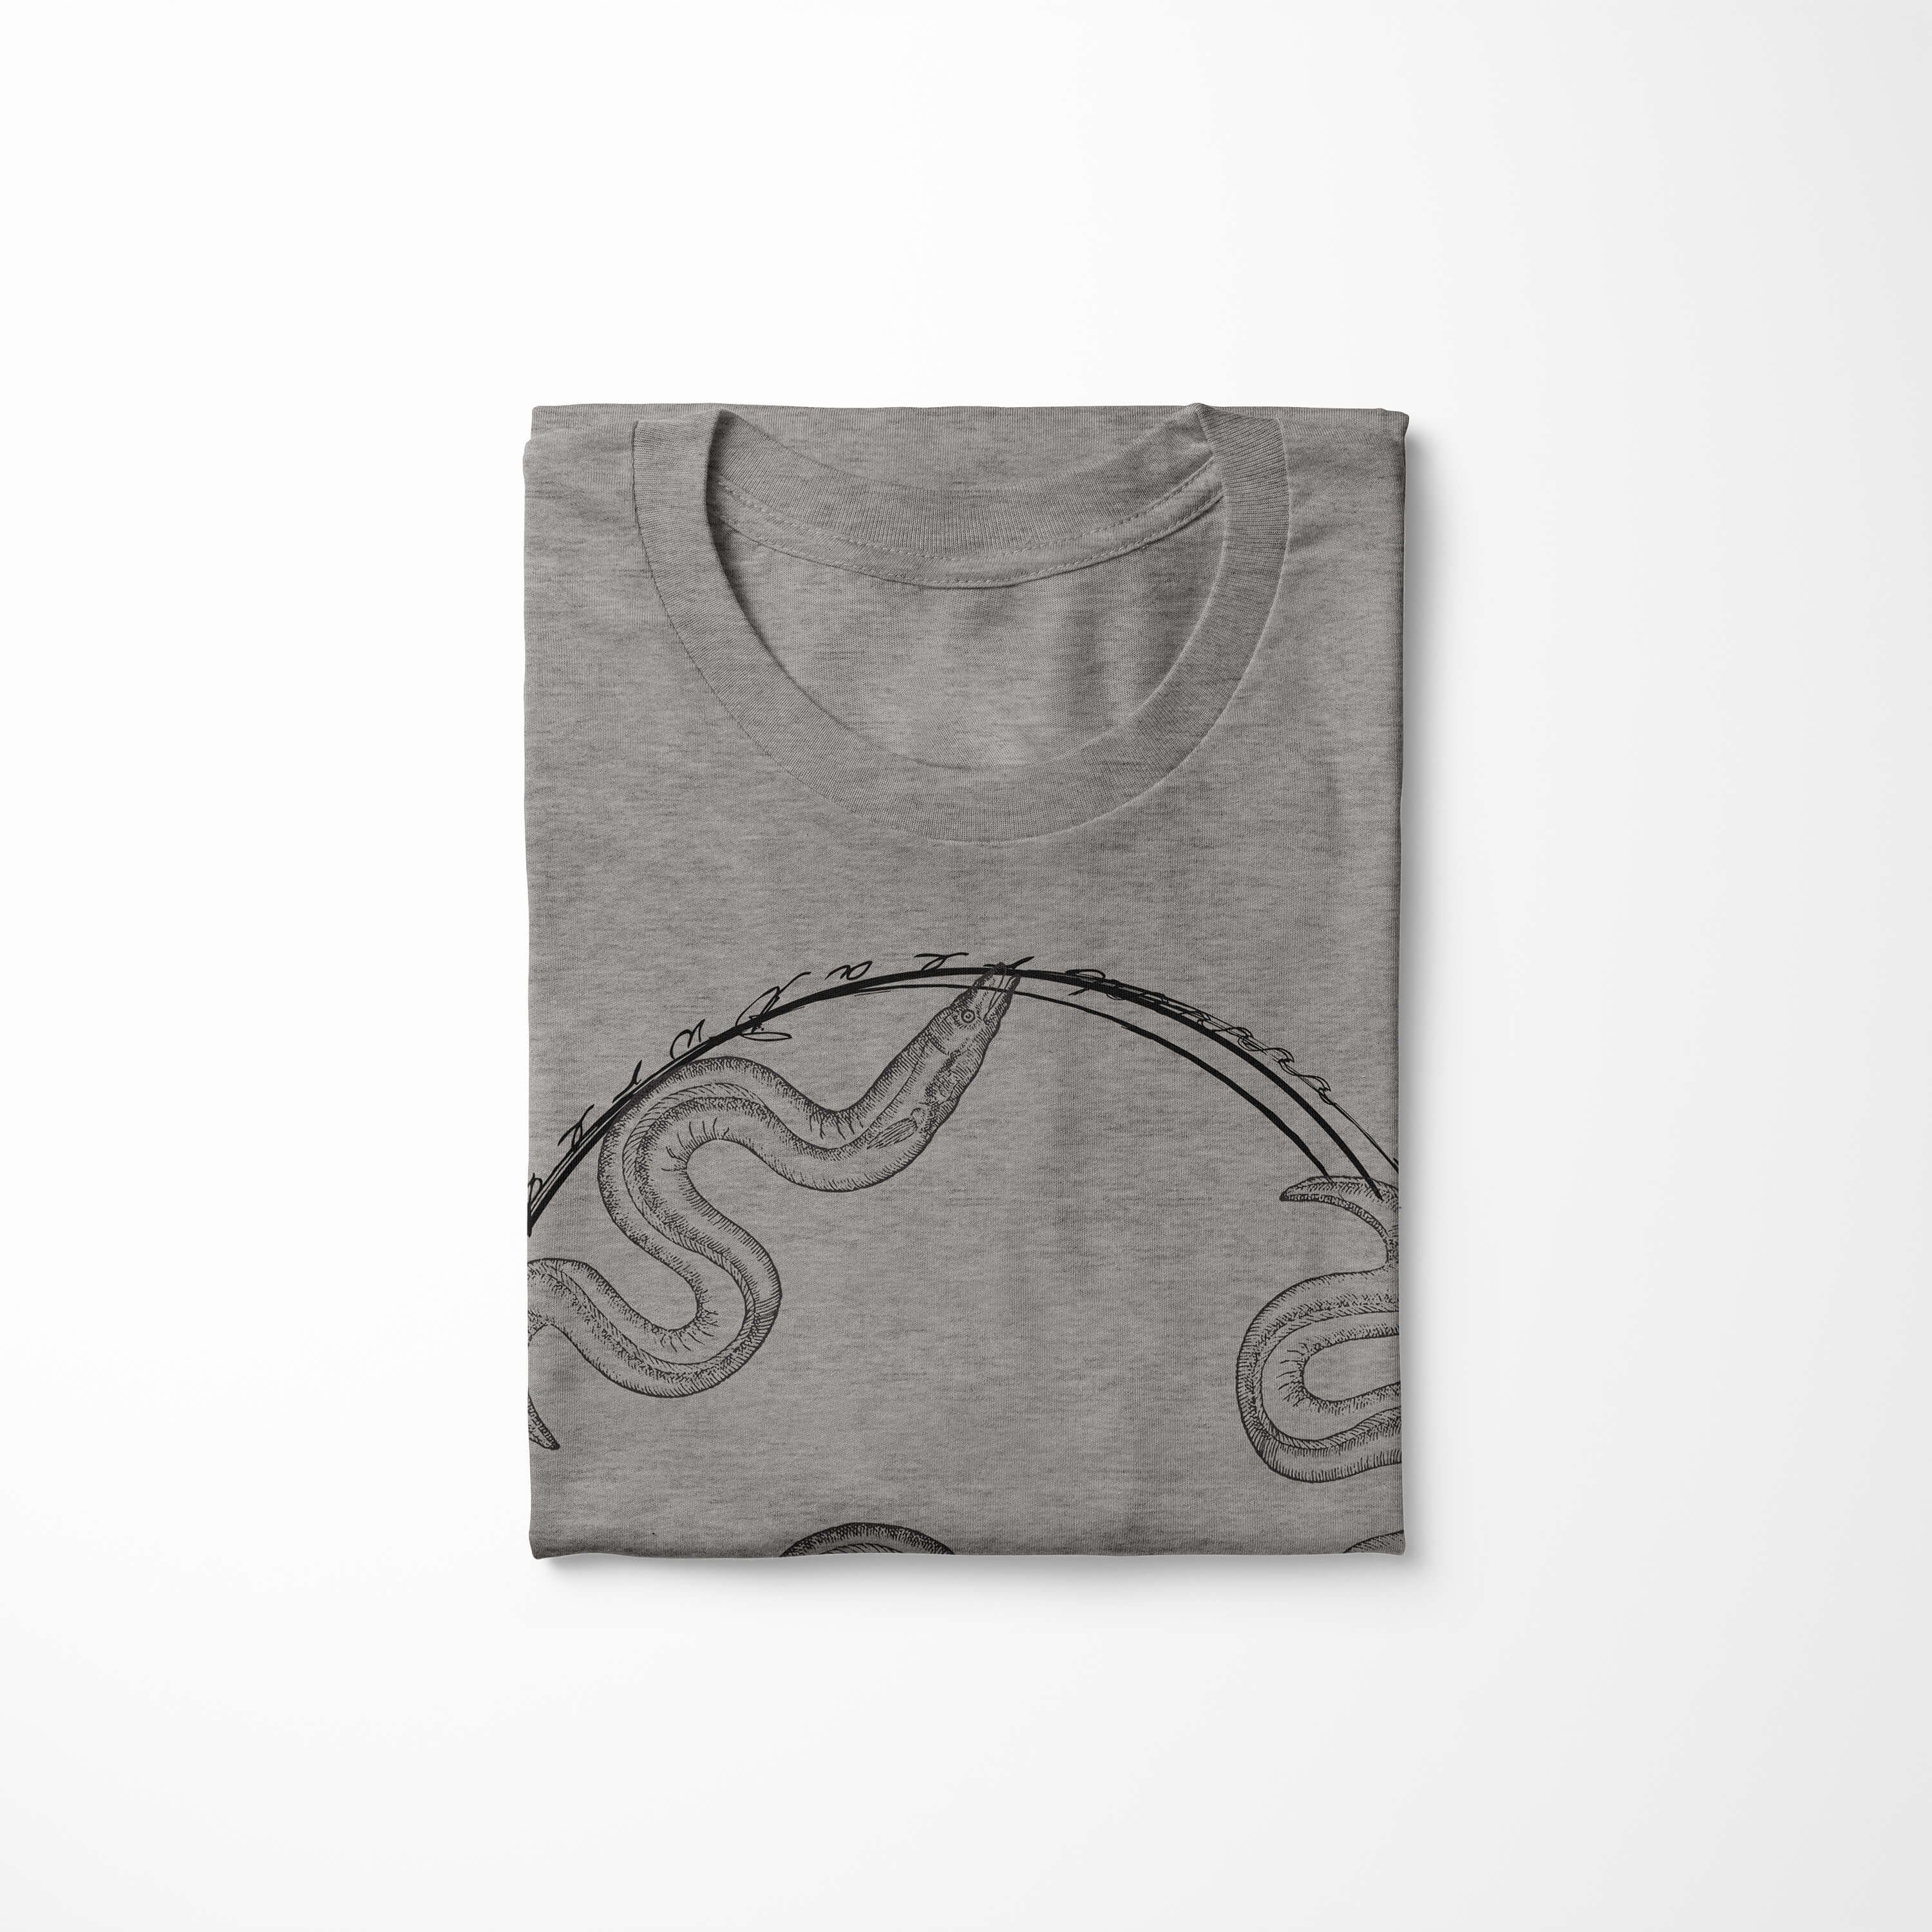 T-Shirt feine Fische / T-Shirt Serie: Sea Sinus sportlicher 093 Struktur Creatures, Art Tiefsee und - Schnitt Ash Sea